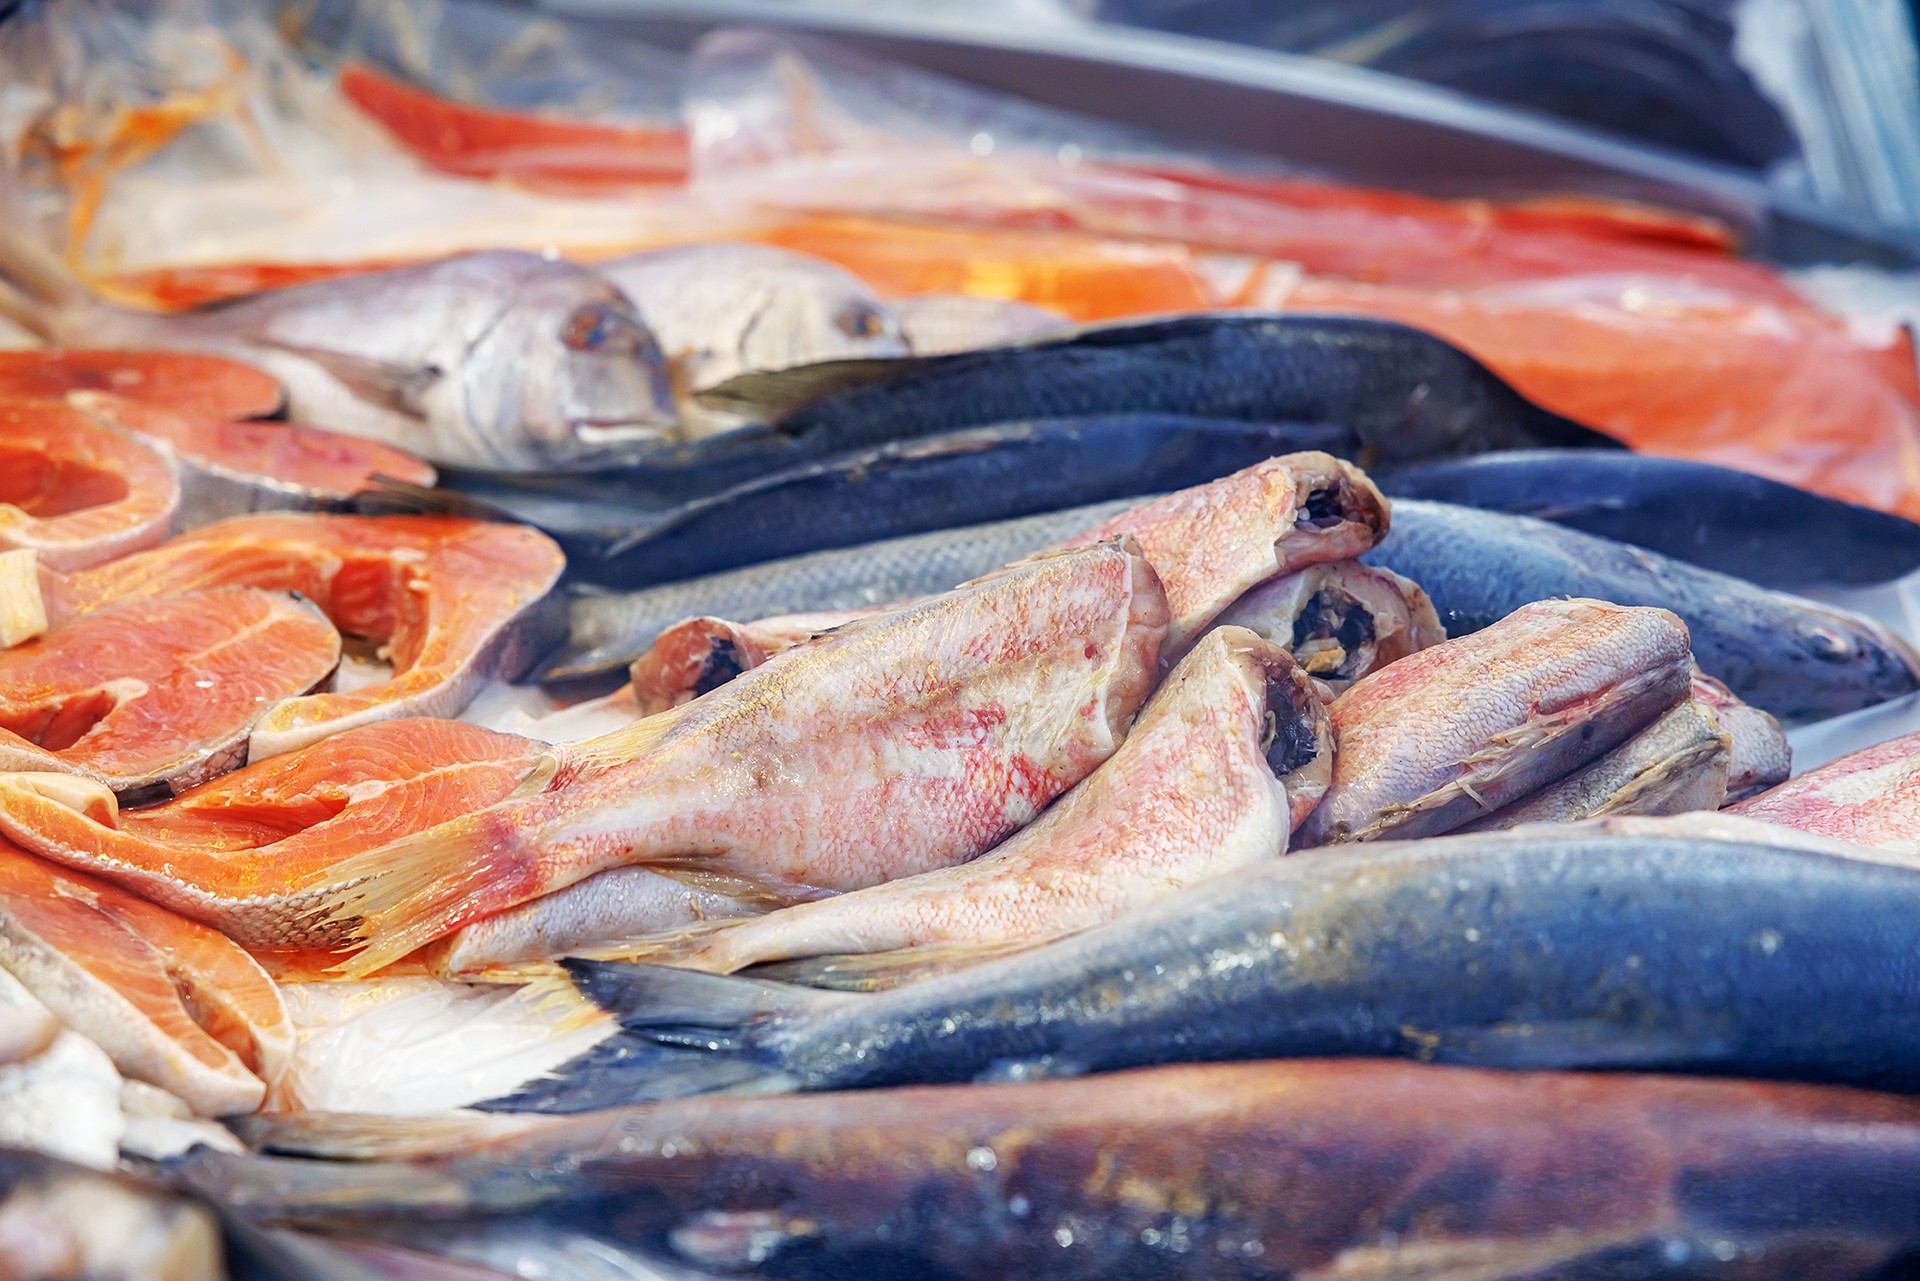 Аналитик заявил, что летом риск заразиться ботулизмом от сырой рыбы возрастает